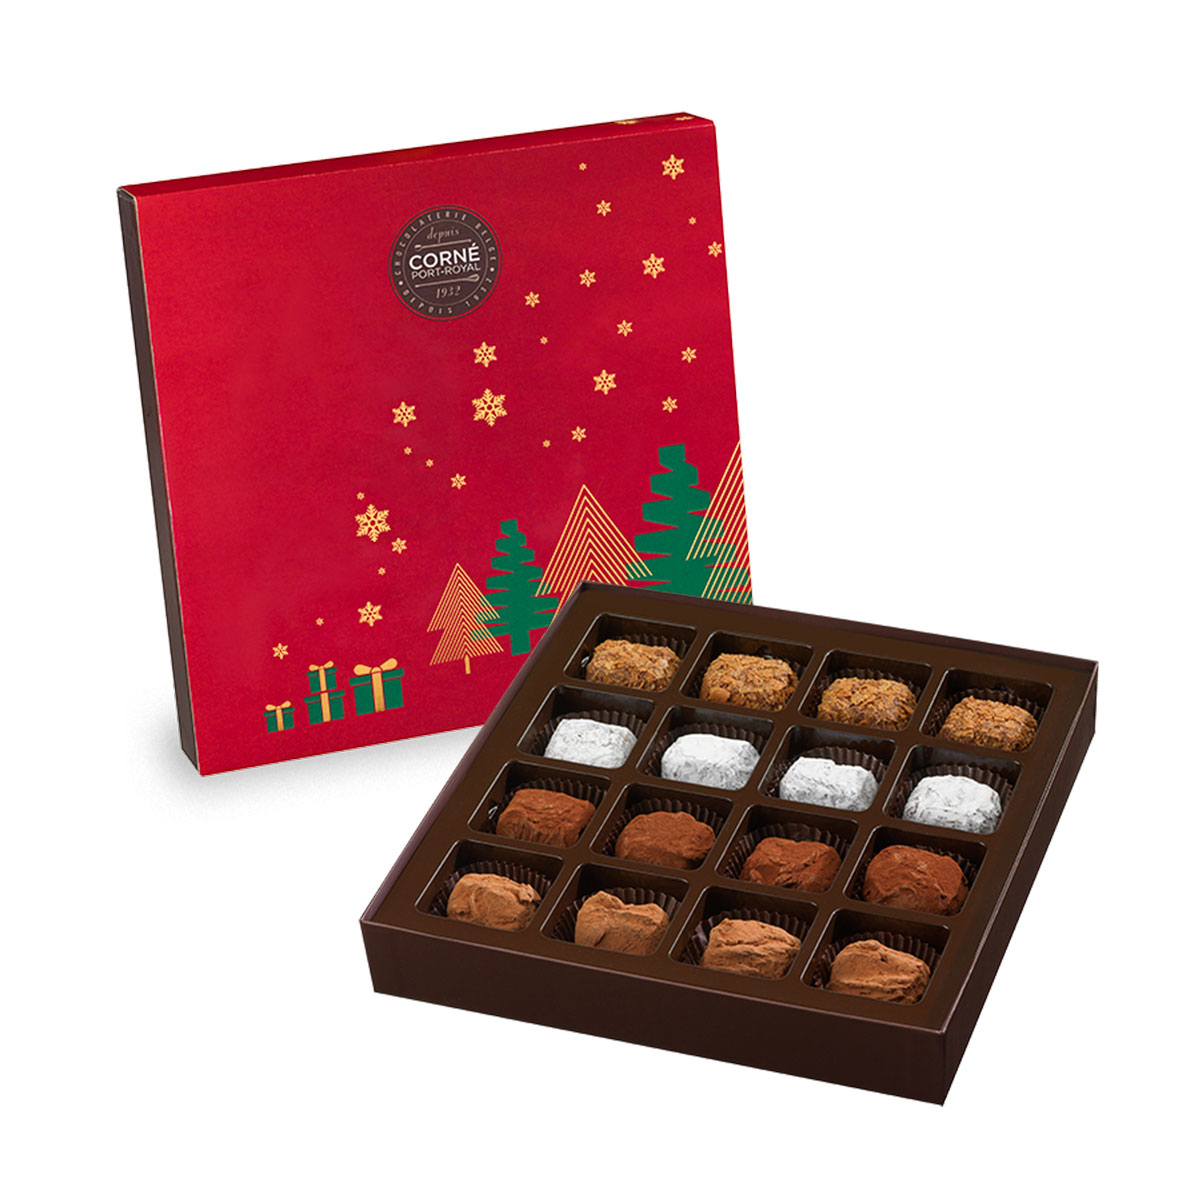 Livraison chocolat belgique - Livraison de cadeau en belgique